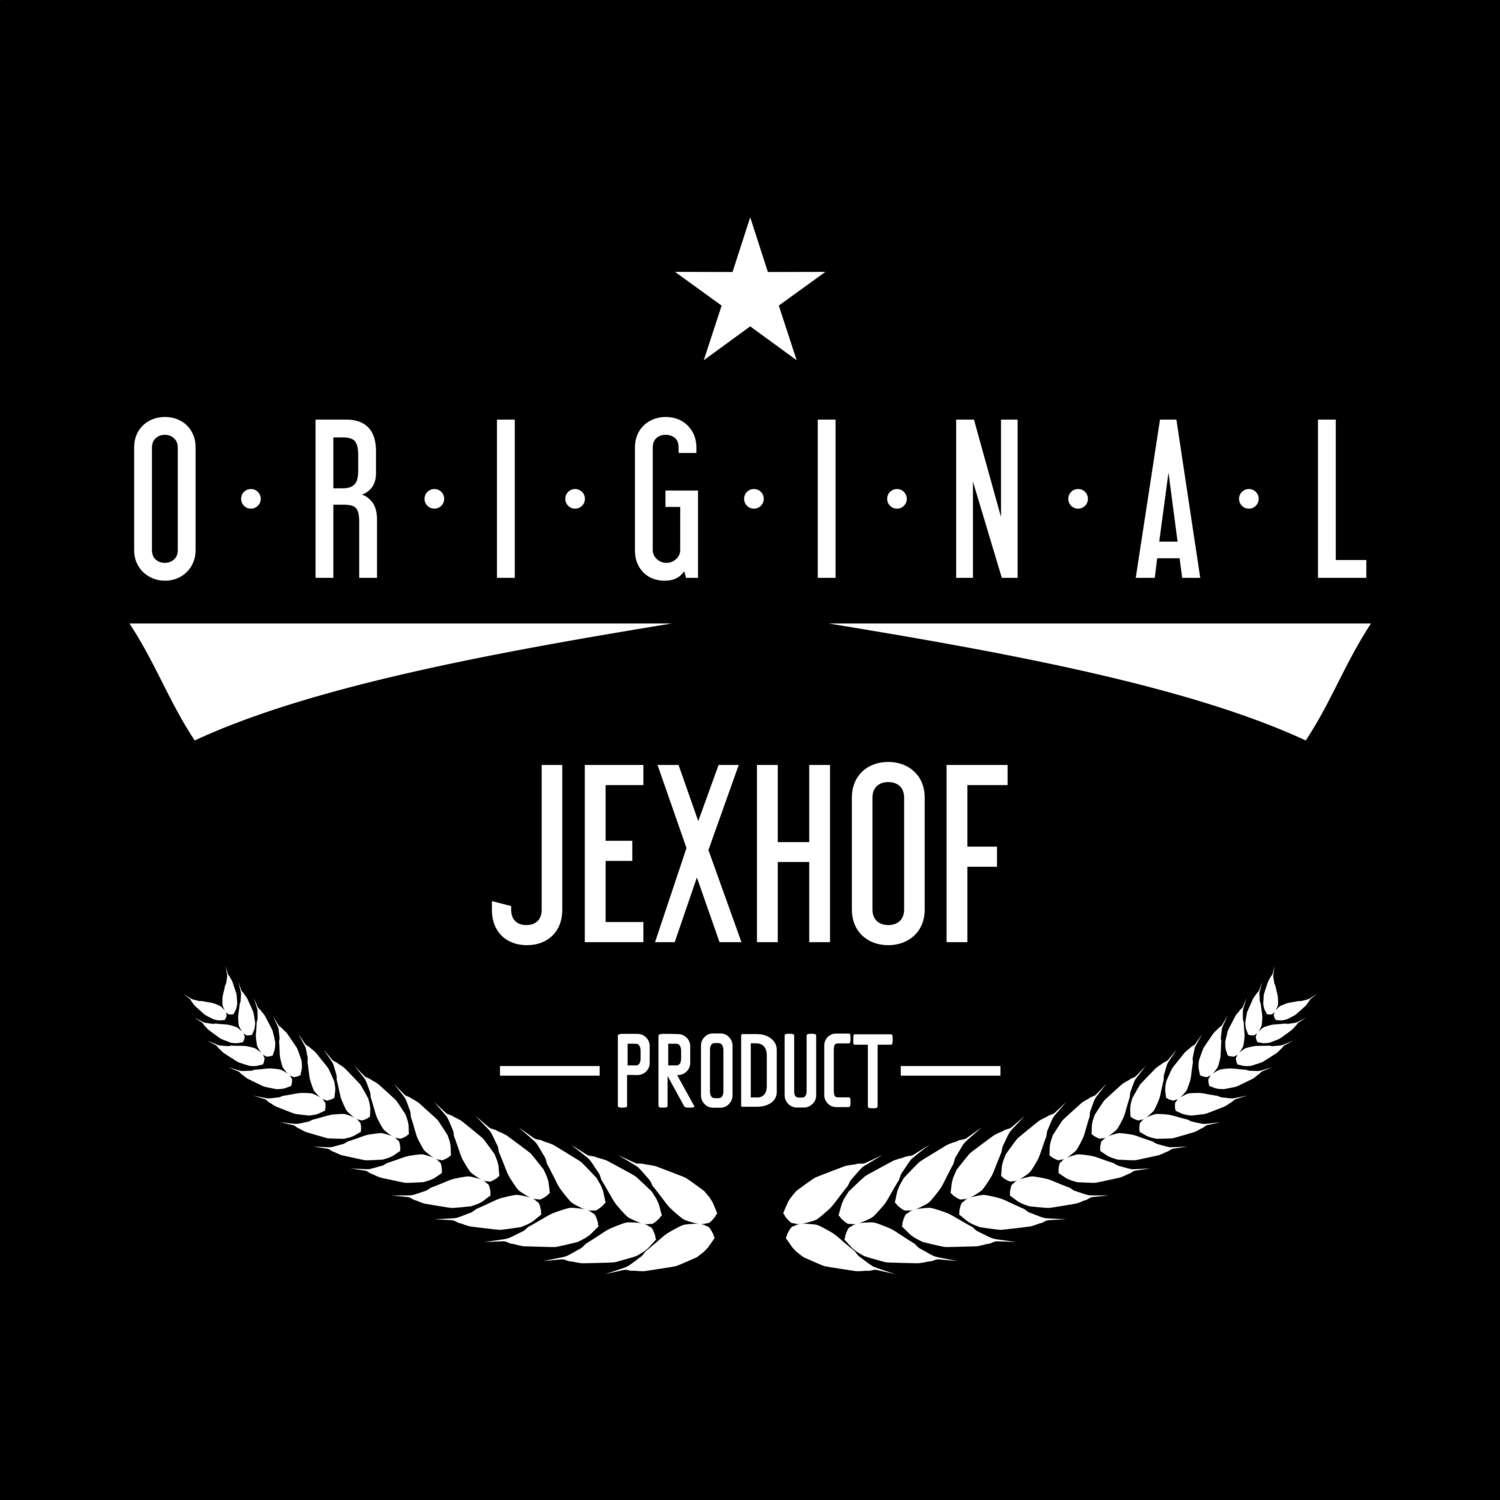 Jexhof T-Shirt »Original Product«